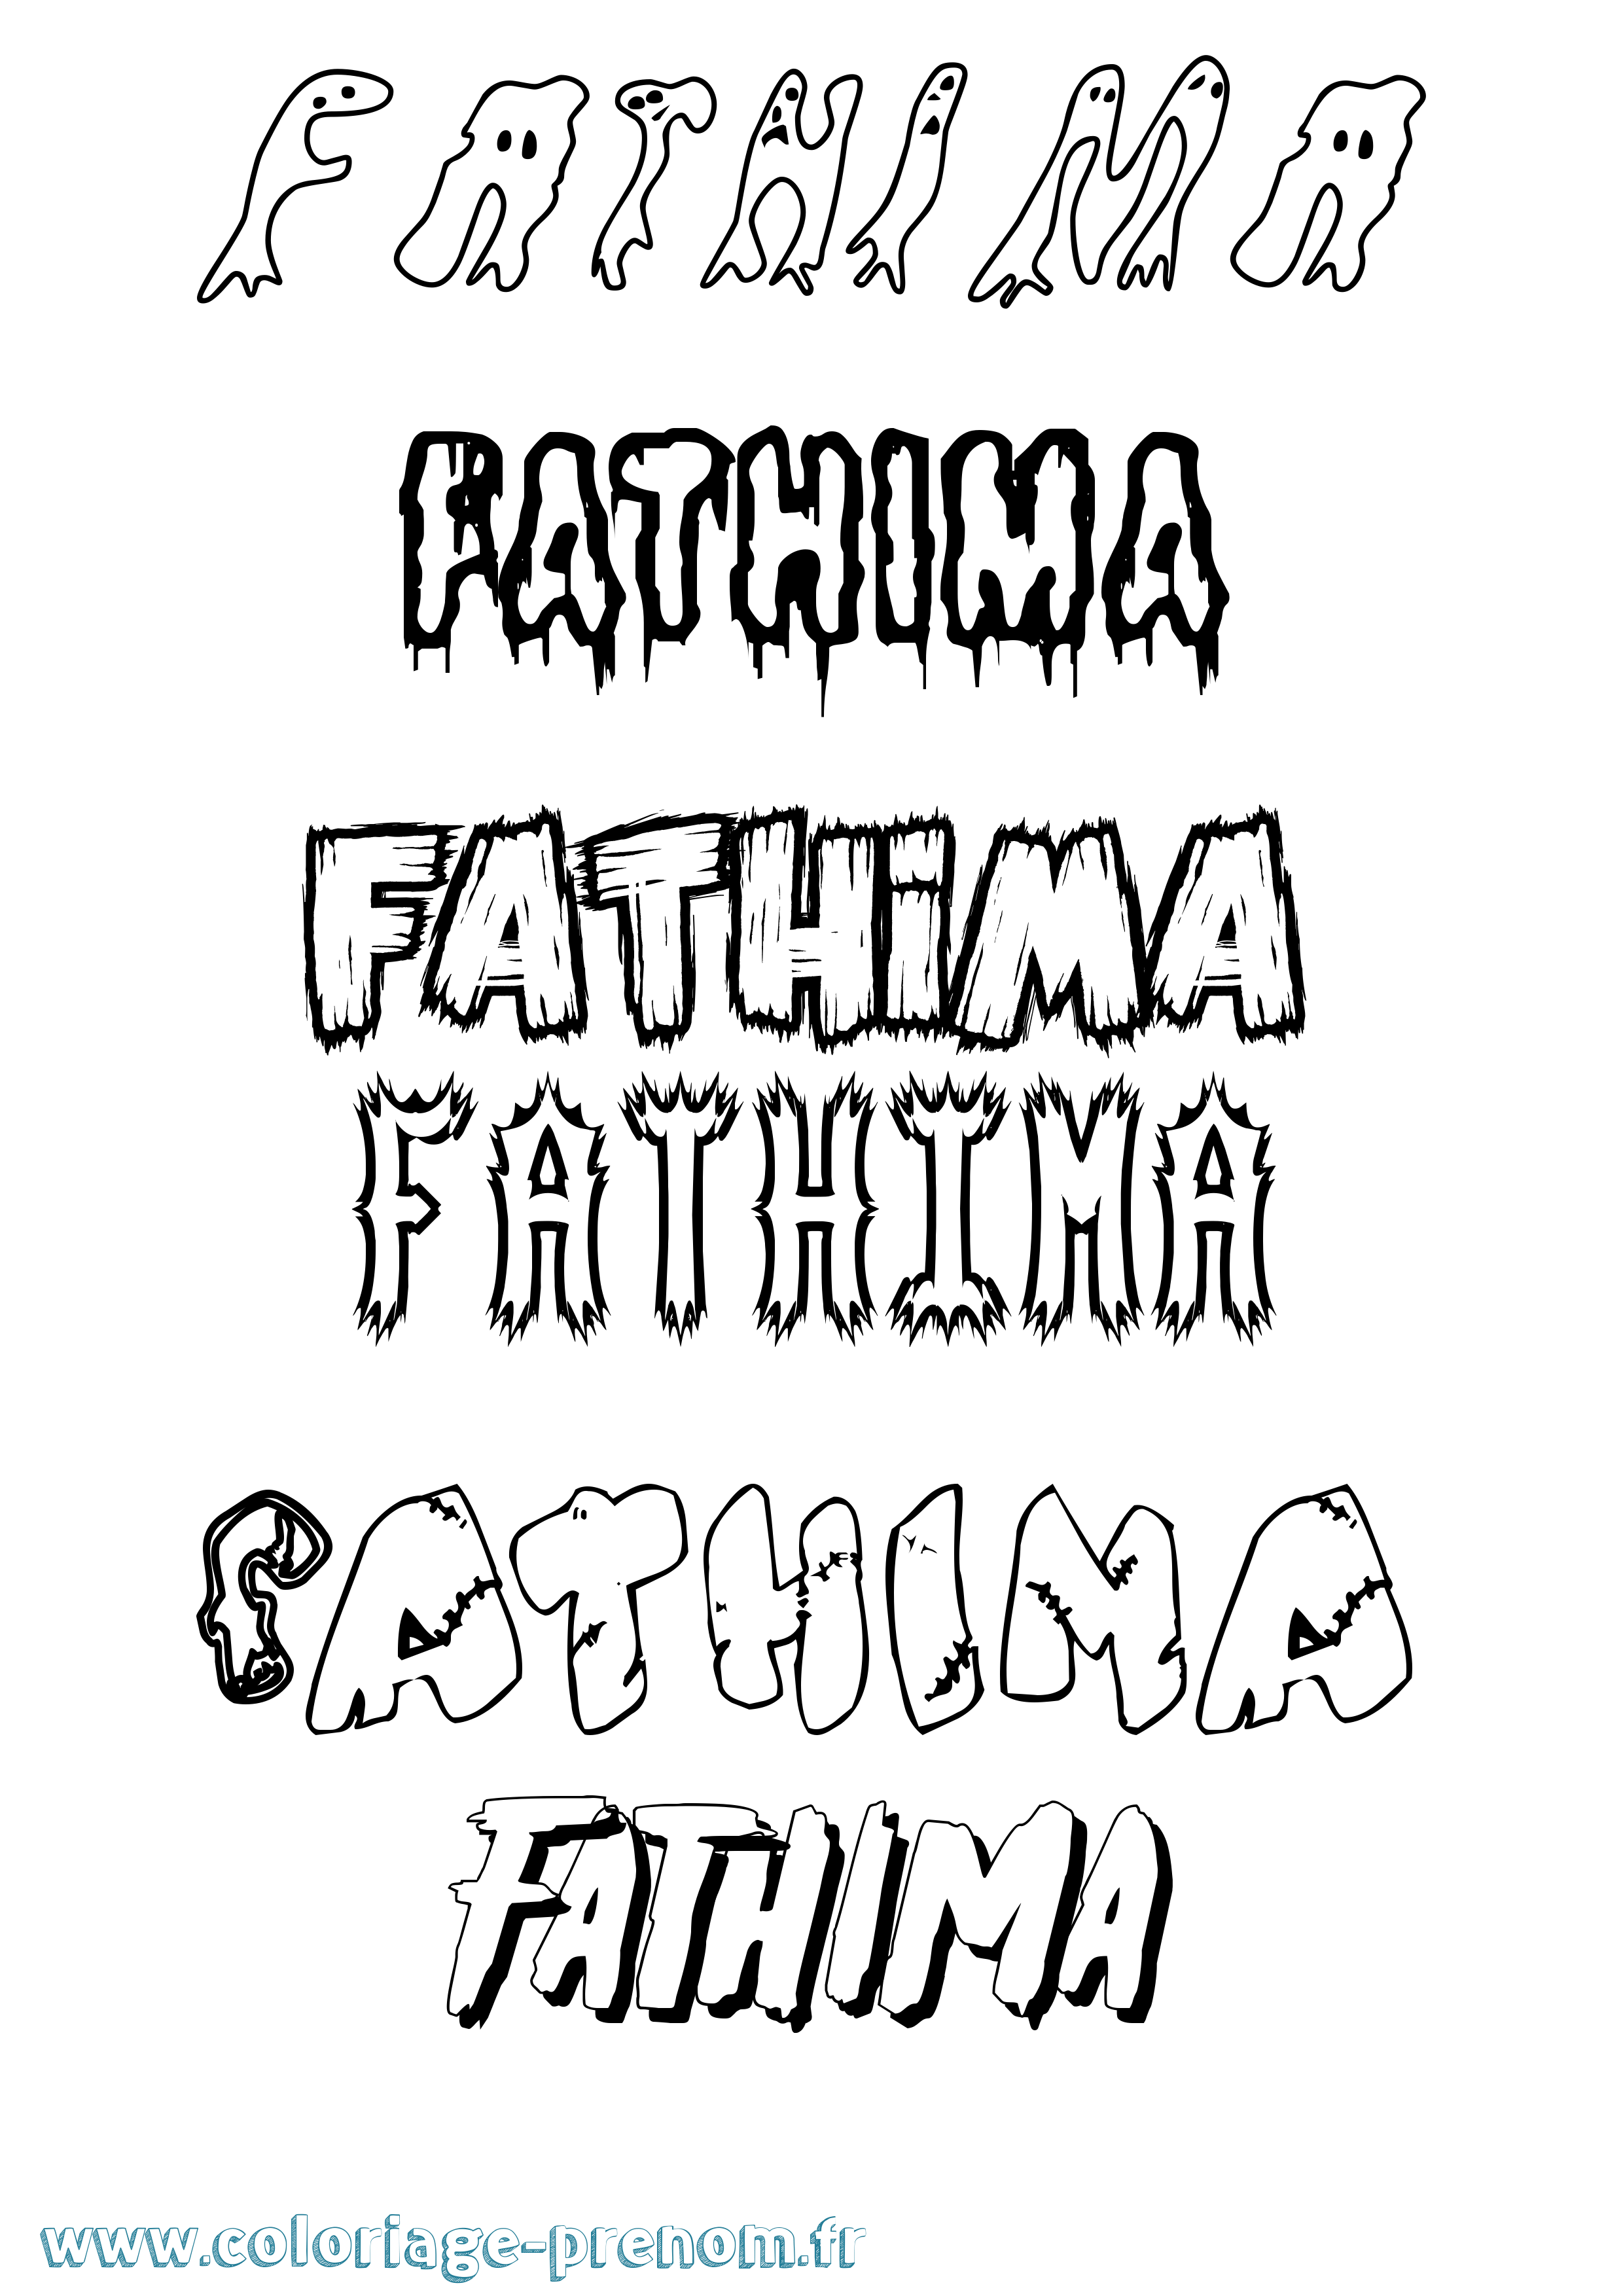 Coloriage prénom Fathima Frisson